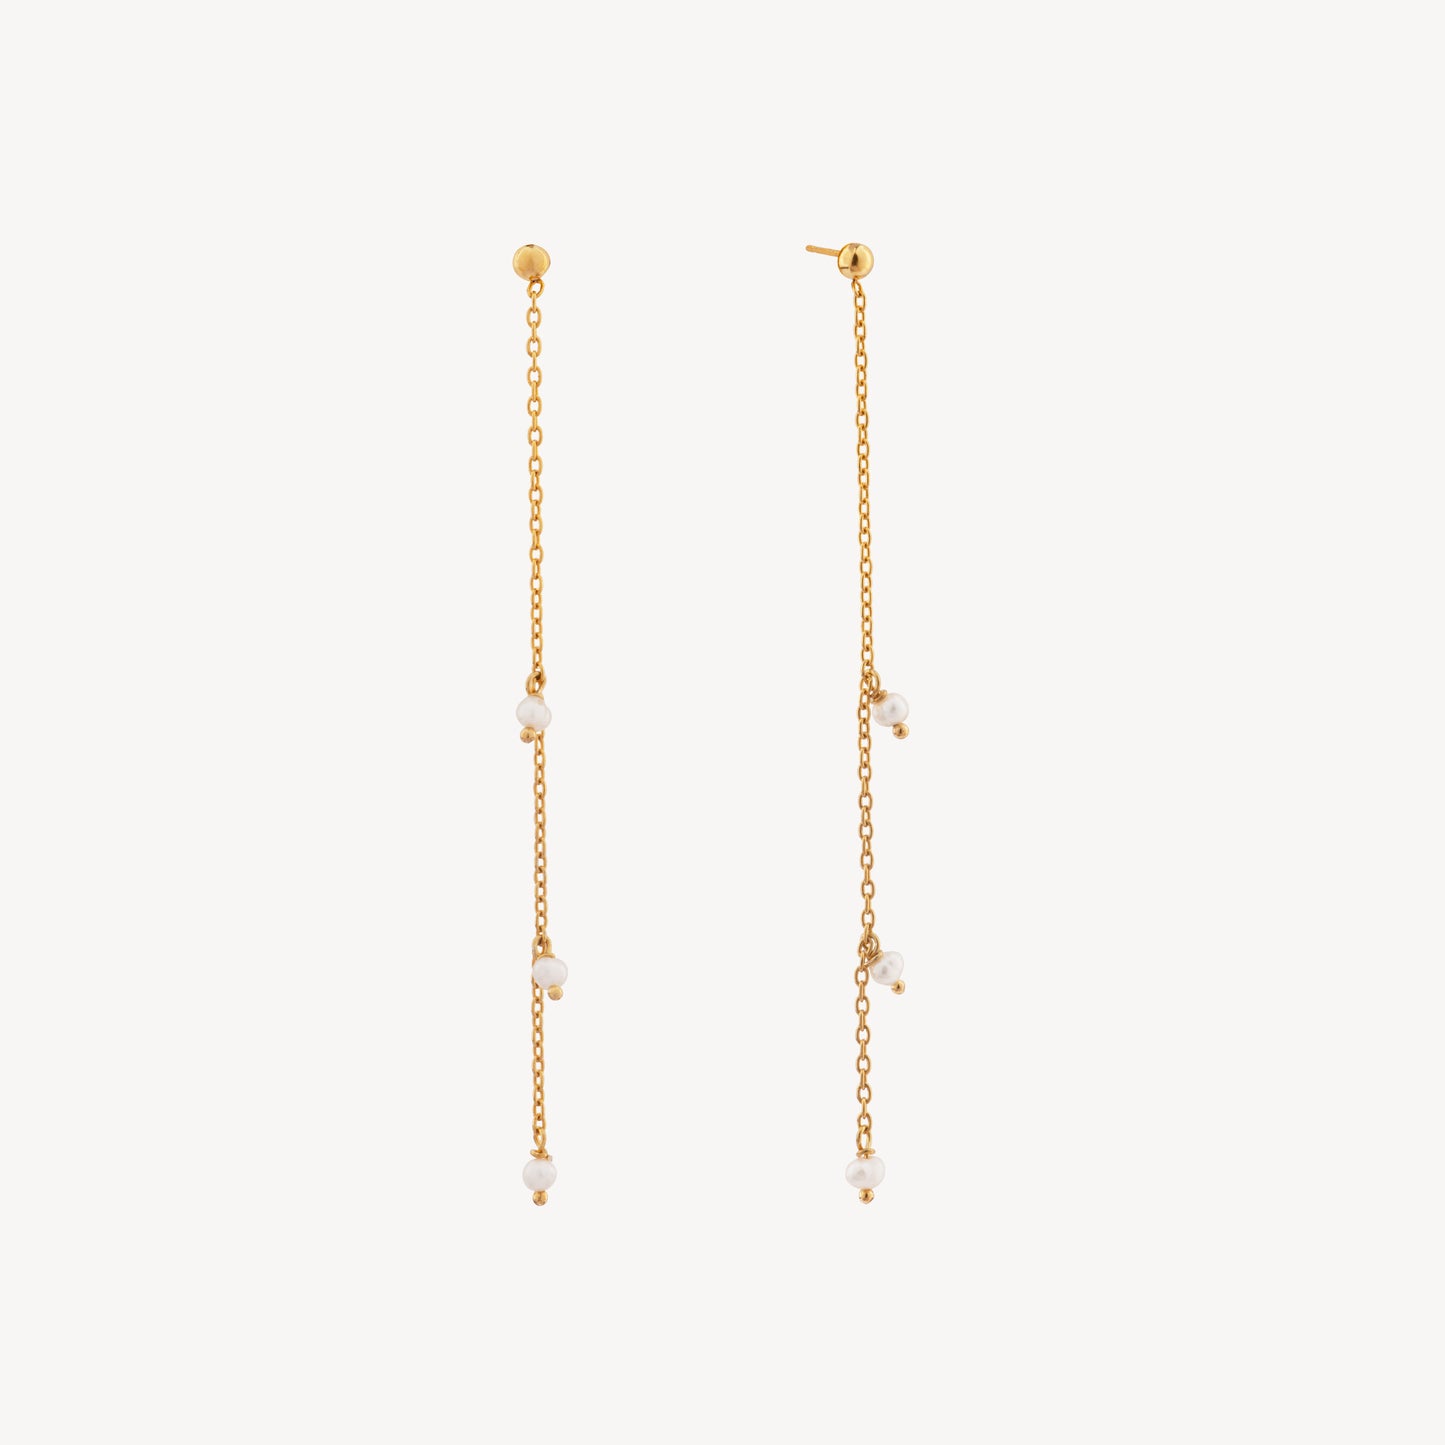 Amalfi earrings